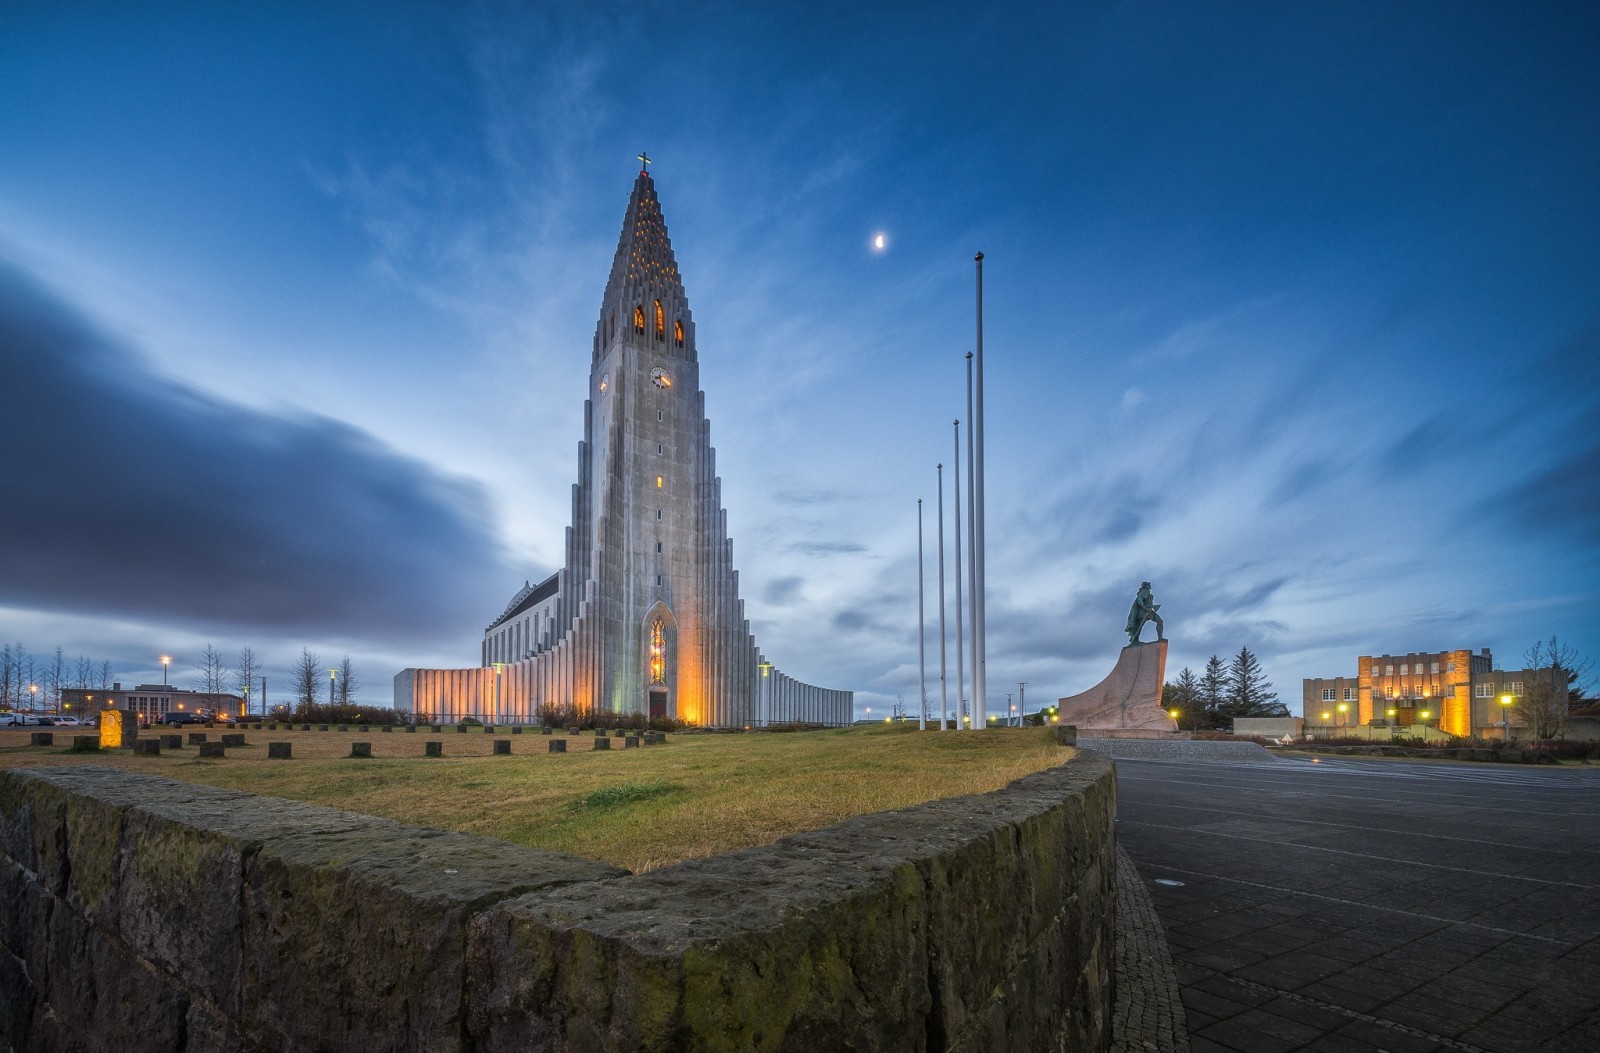 空, 夜, 雲, 教会, アイスランド, 記念碑, レイキャビク